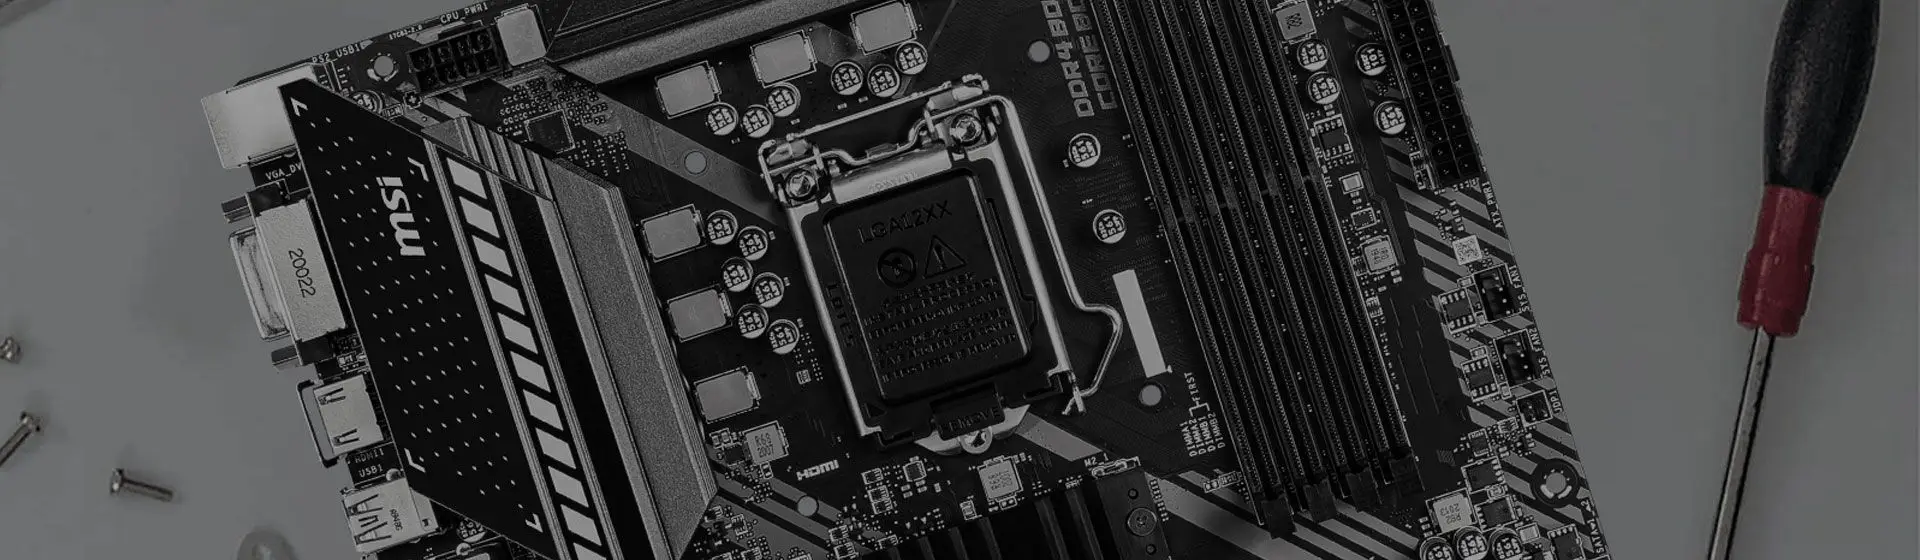 Melhor placa-mãe LGA 1151 para processador Intel: veja nosso top 13